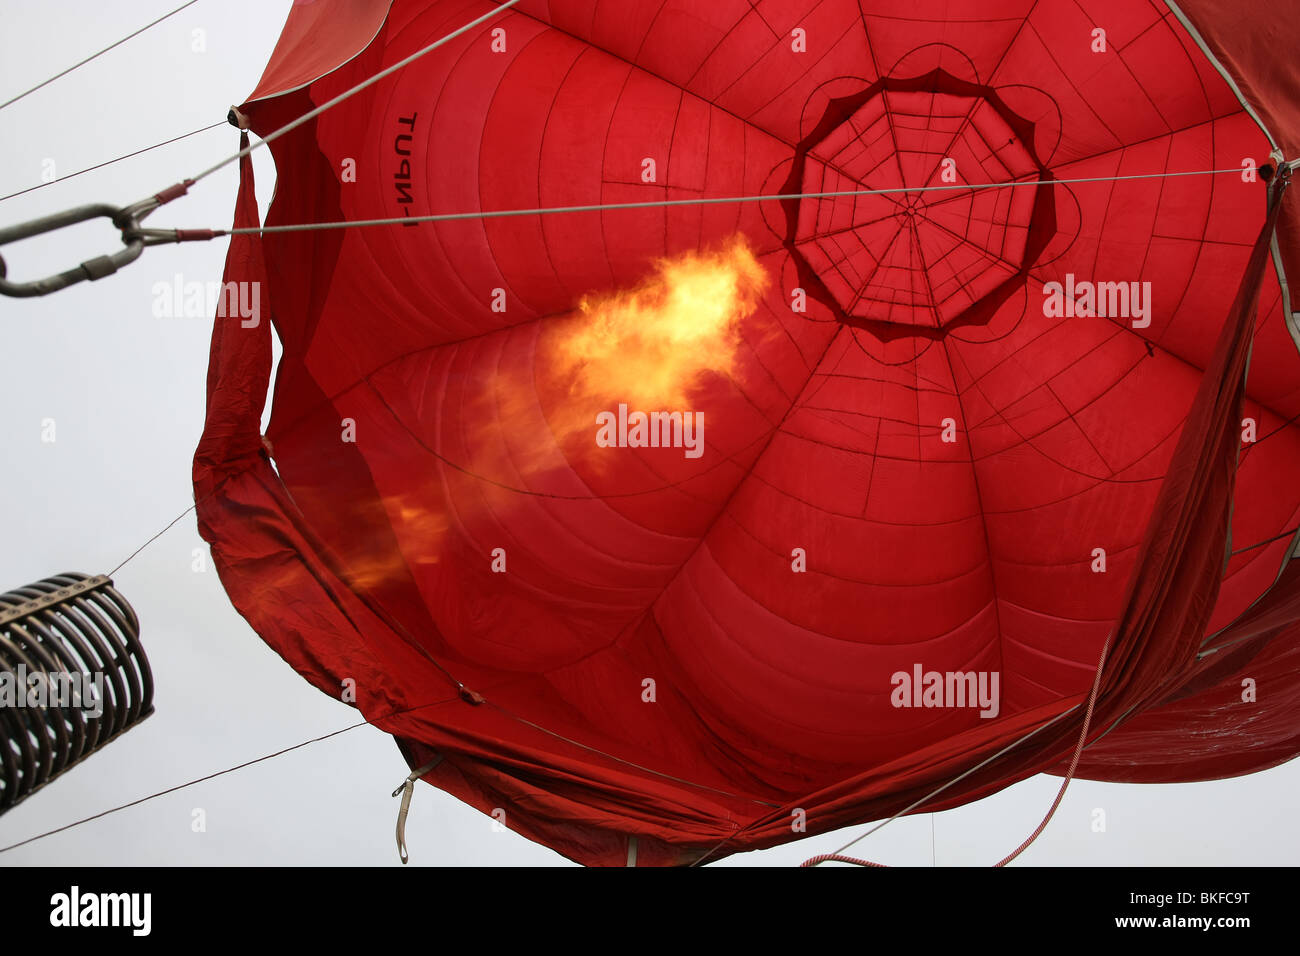 Ballon à air chaud, au cours de l'inflation Banque D'Images